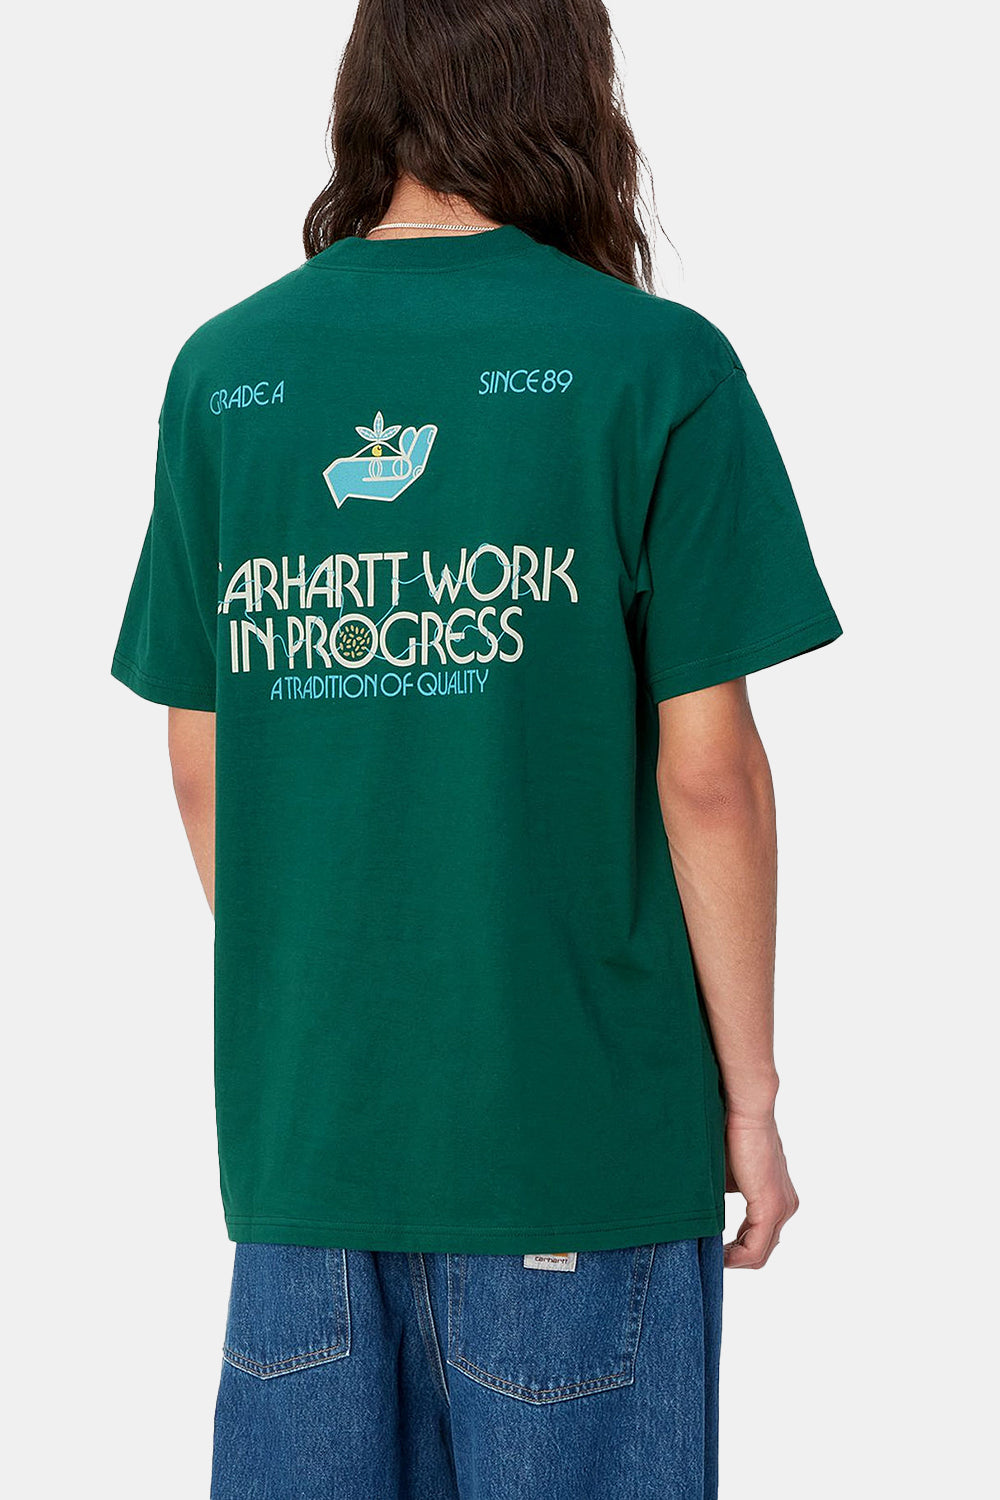 Carhartt WIP Short Sleeve Soil T-Shirt (Chervil Green)